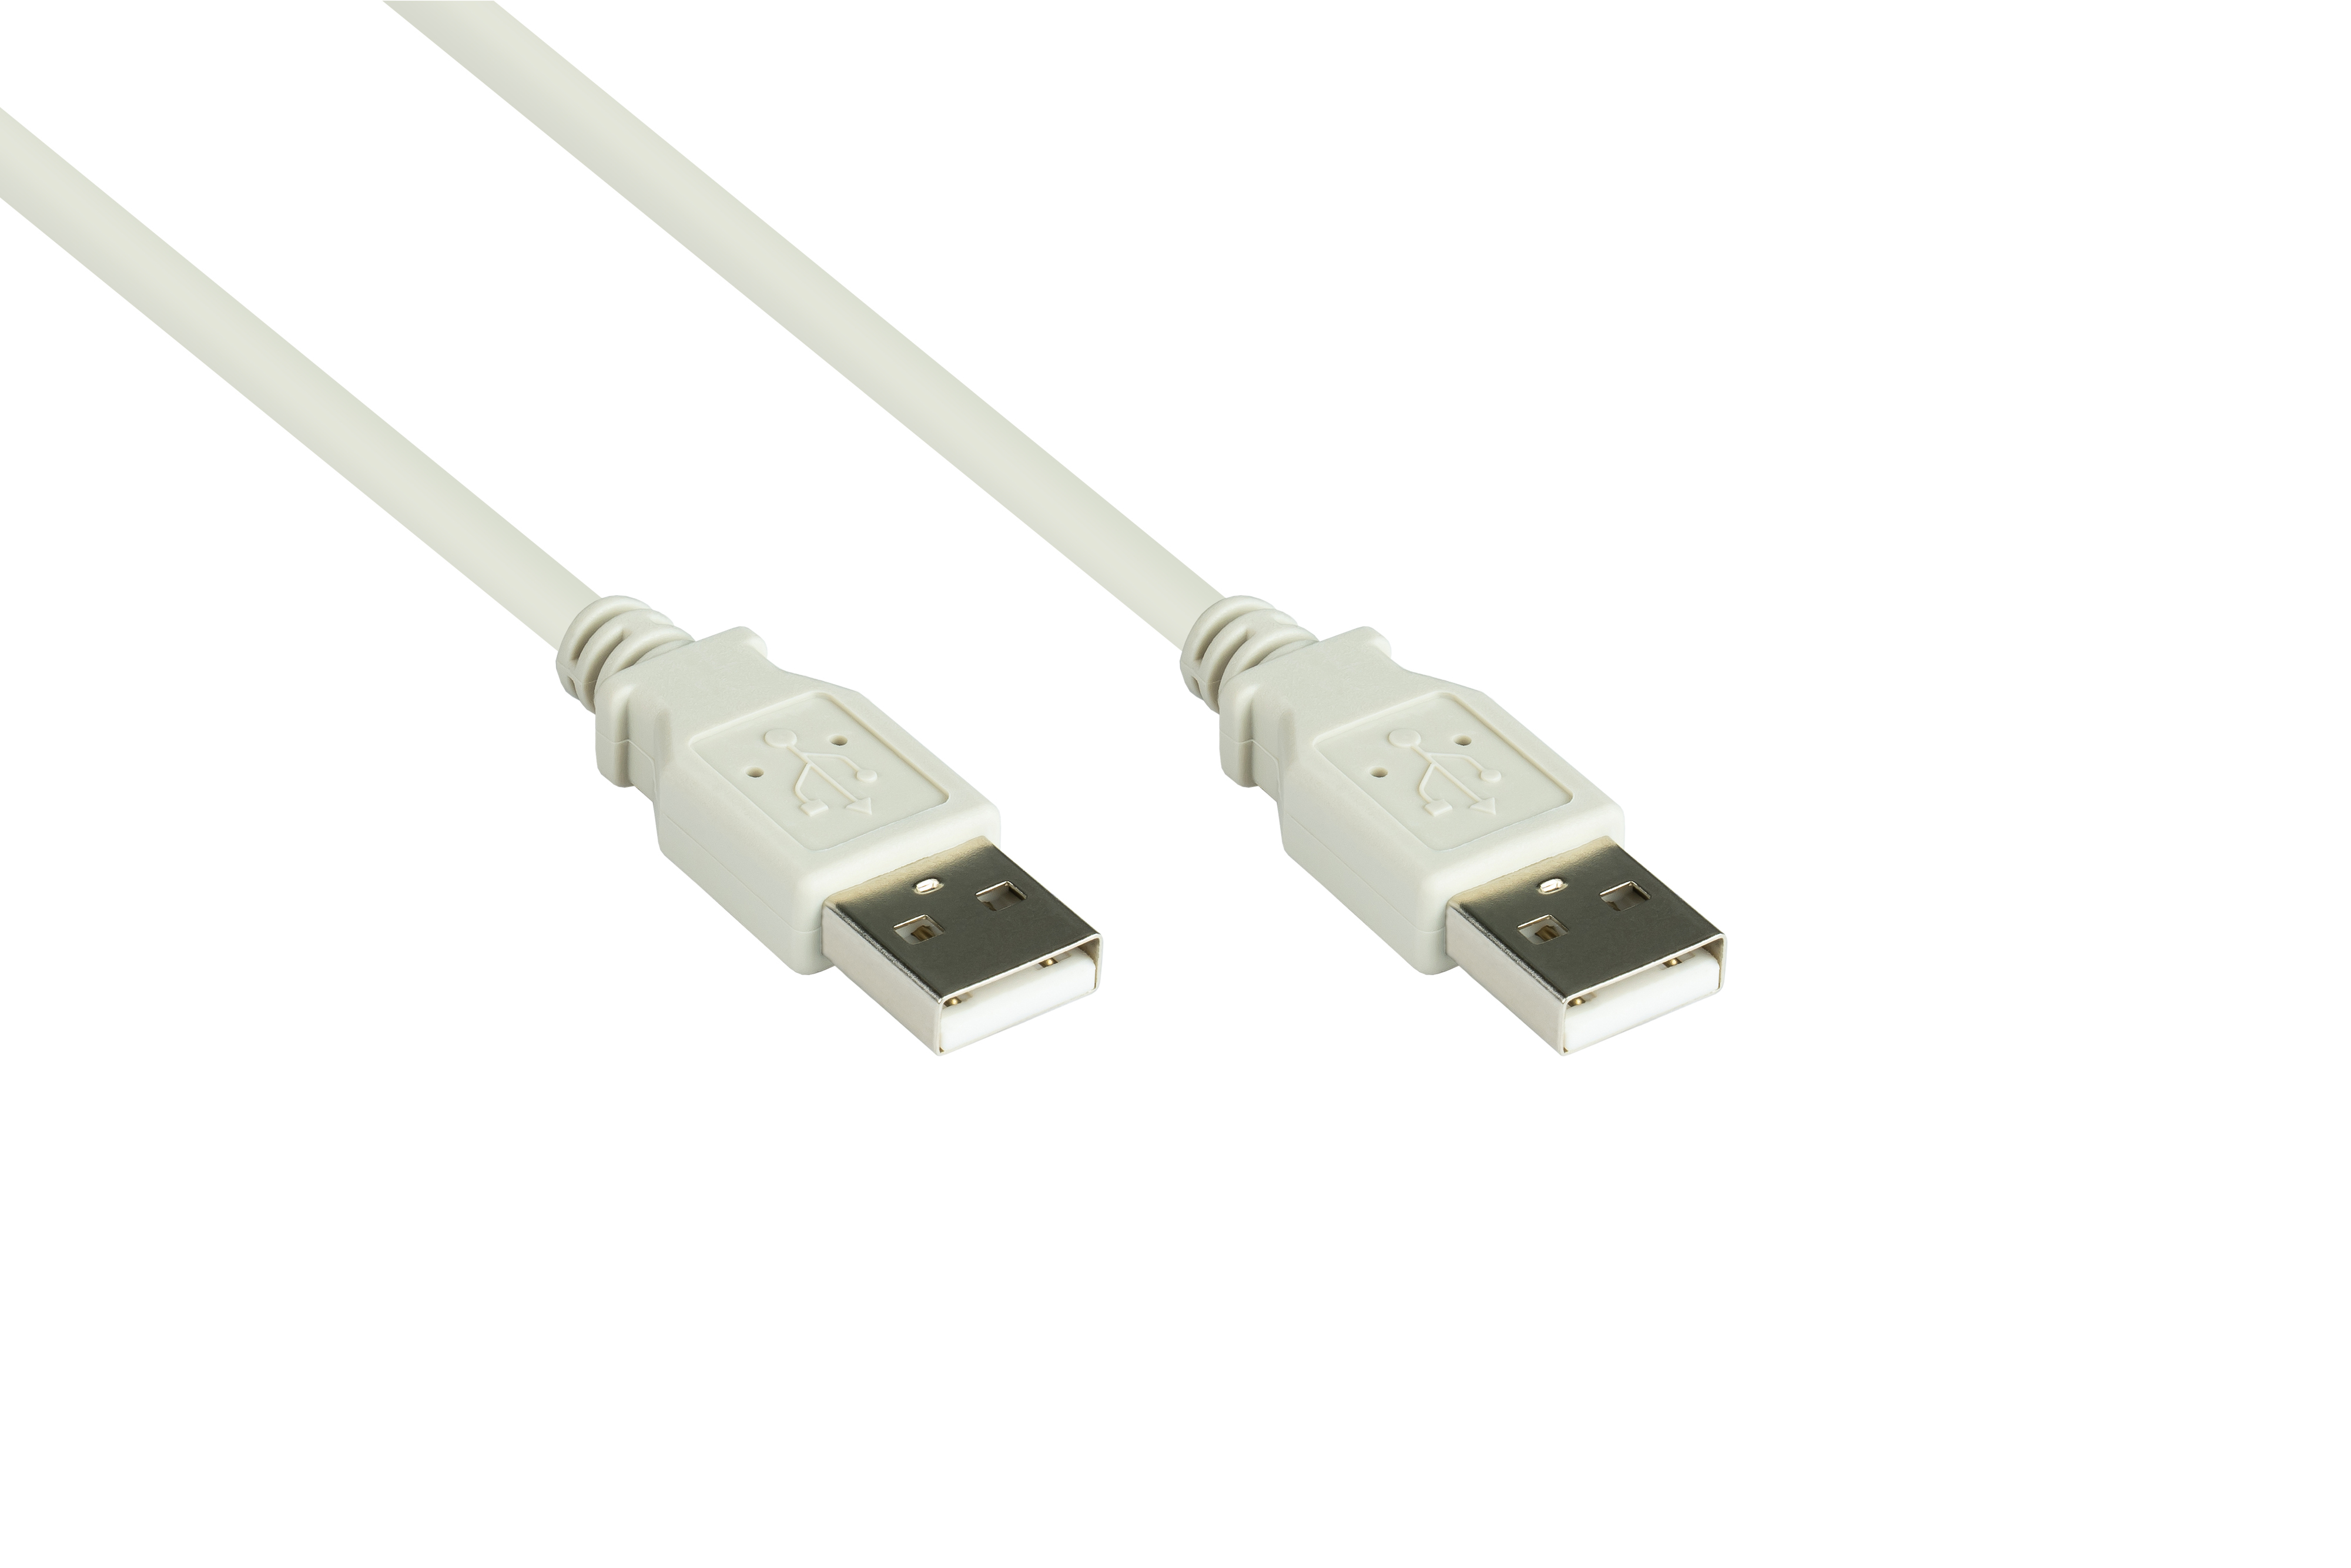 Stecker A A, Anschlusskabel USB an 2.0 Stecker grau KABELMEISTER